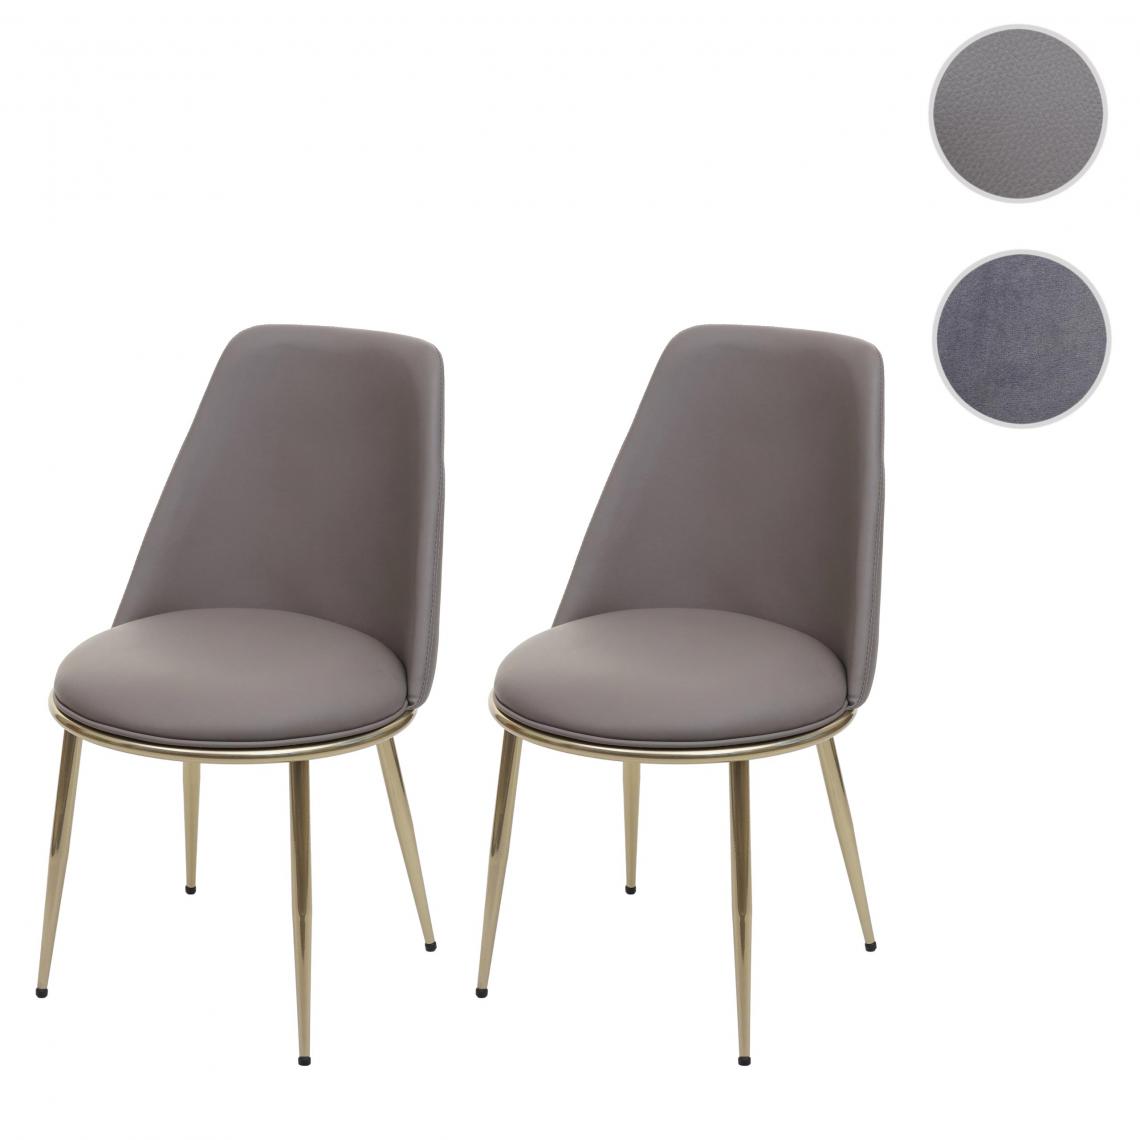 Mendler - 2x chaise de salle à manger HWC-H28, chaise de cuisine, métal ~ couleur taupe, pieds dorés, similicuir - Chaises